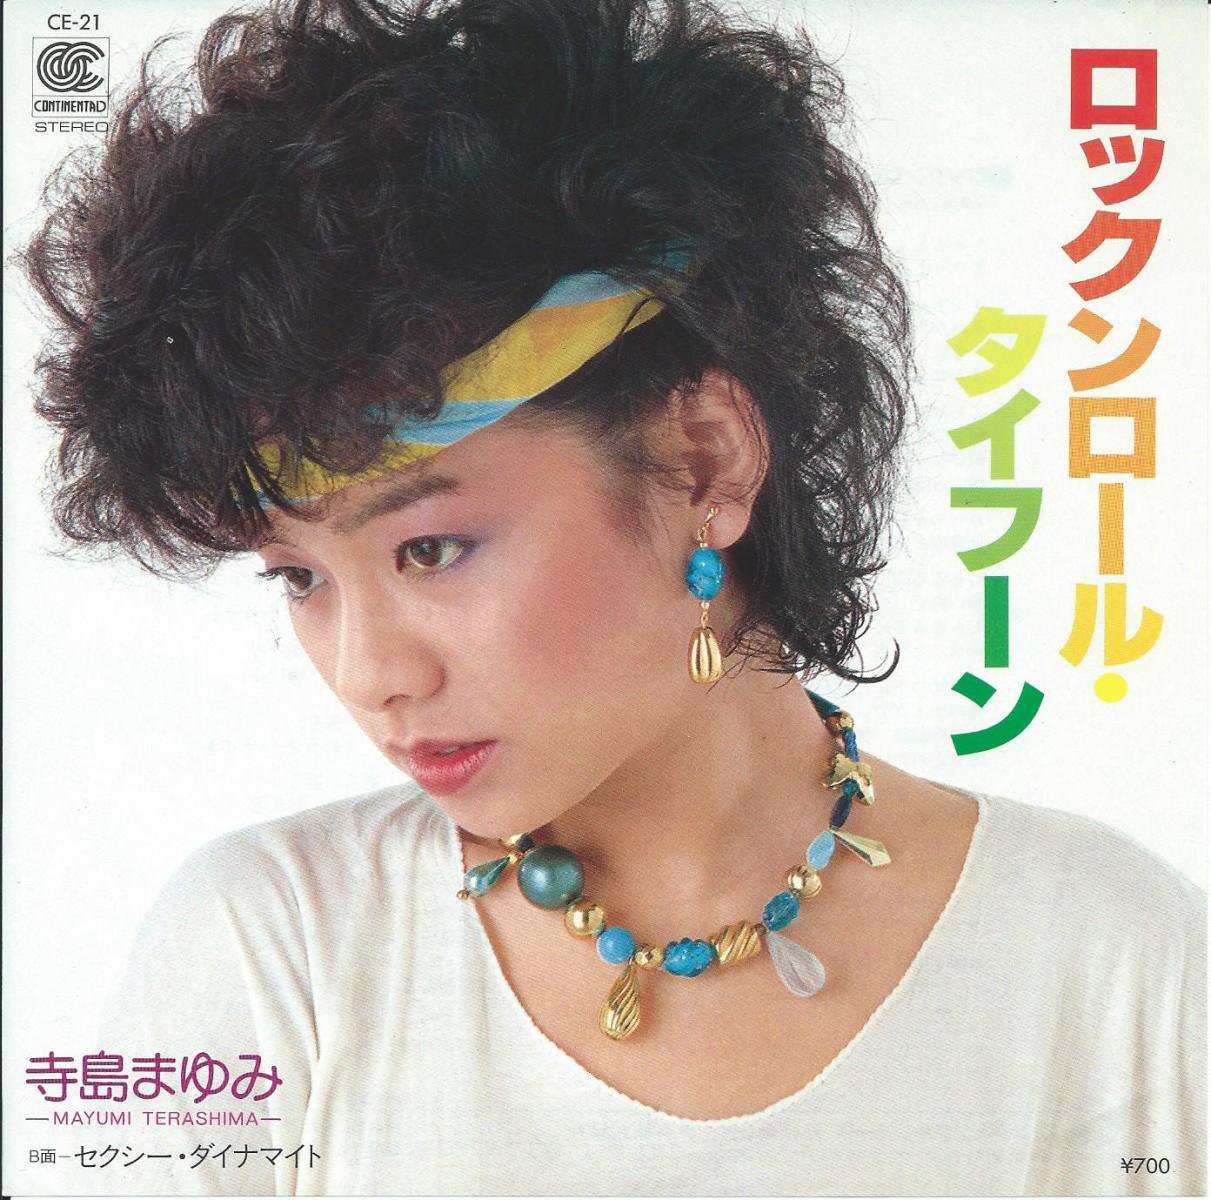 寺島まゆみ Mayumi Terashima ロックンロール タイフーン セクシー ダイナマイト 7 Hip Tank Records